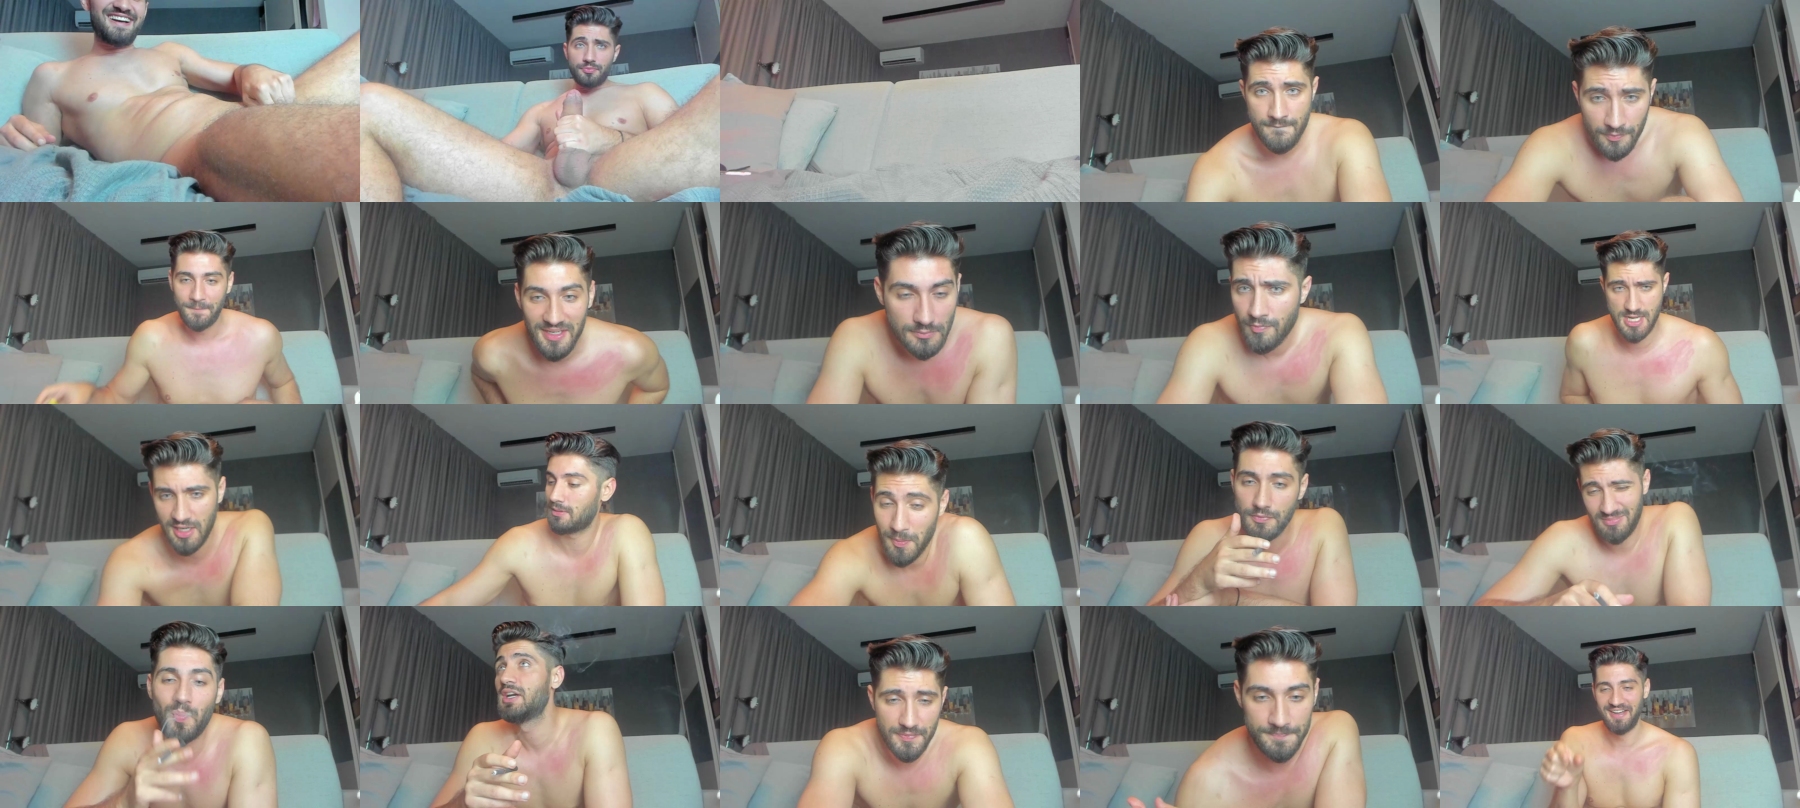 Giovanniandre  24-07-2021 Male Video